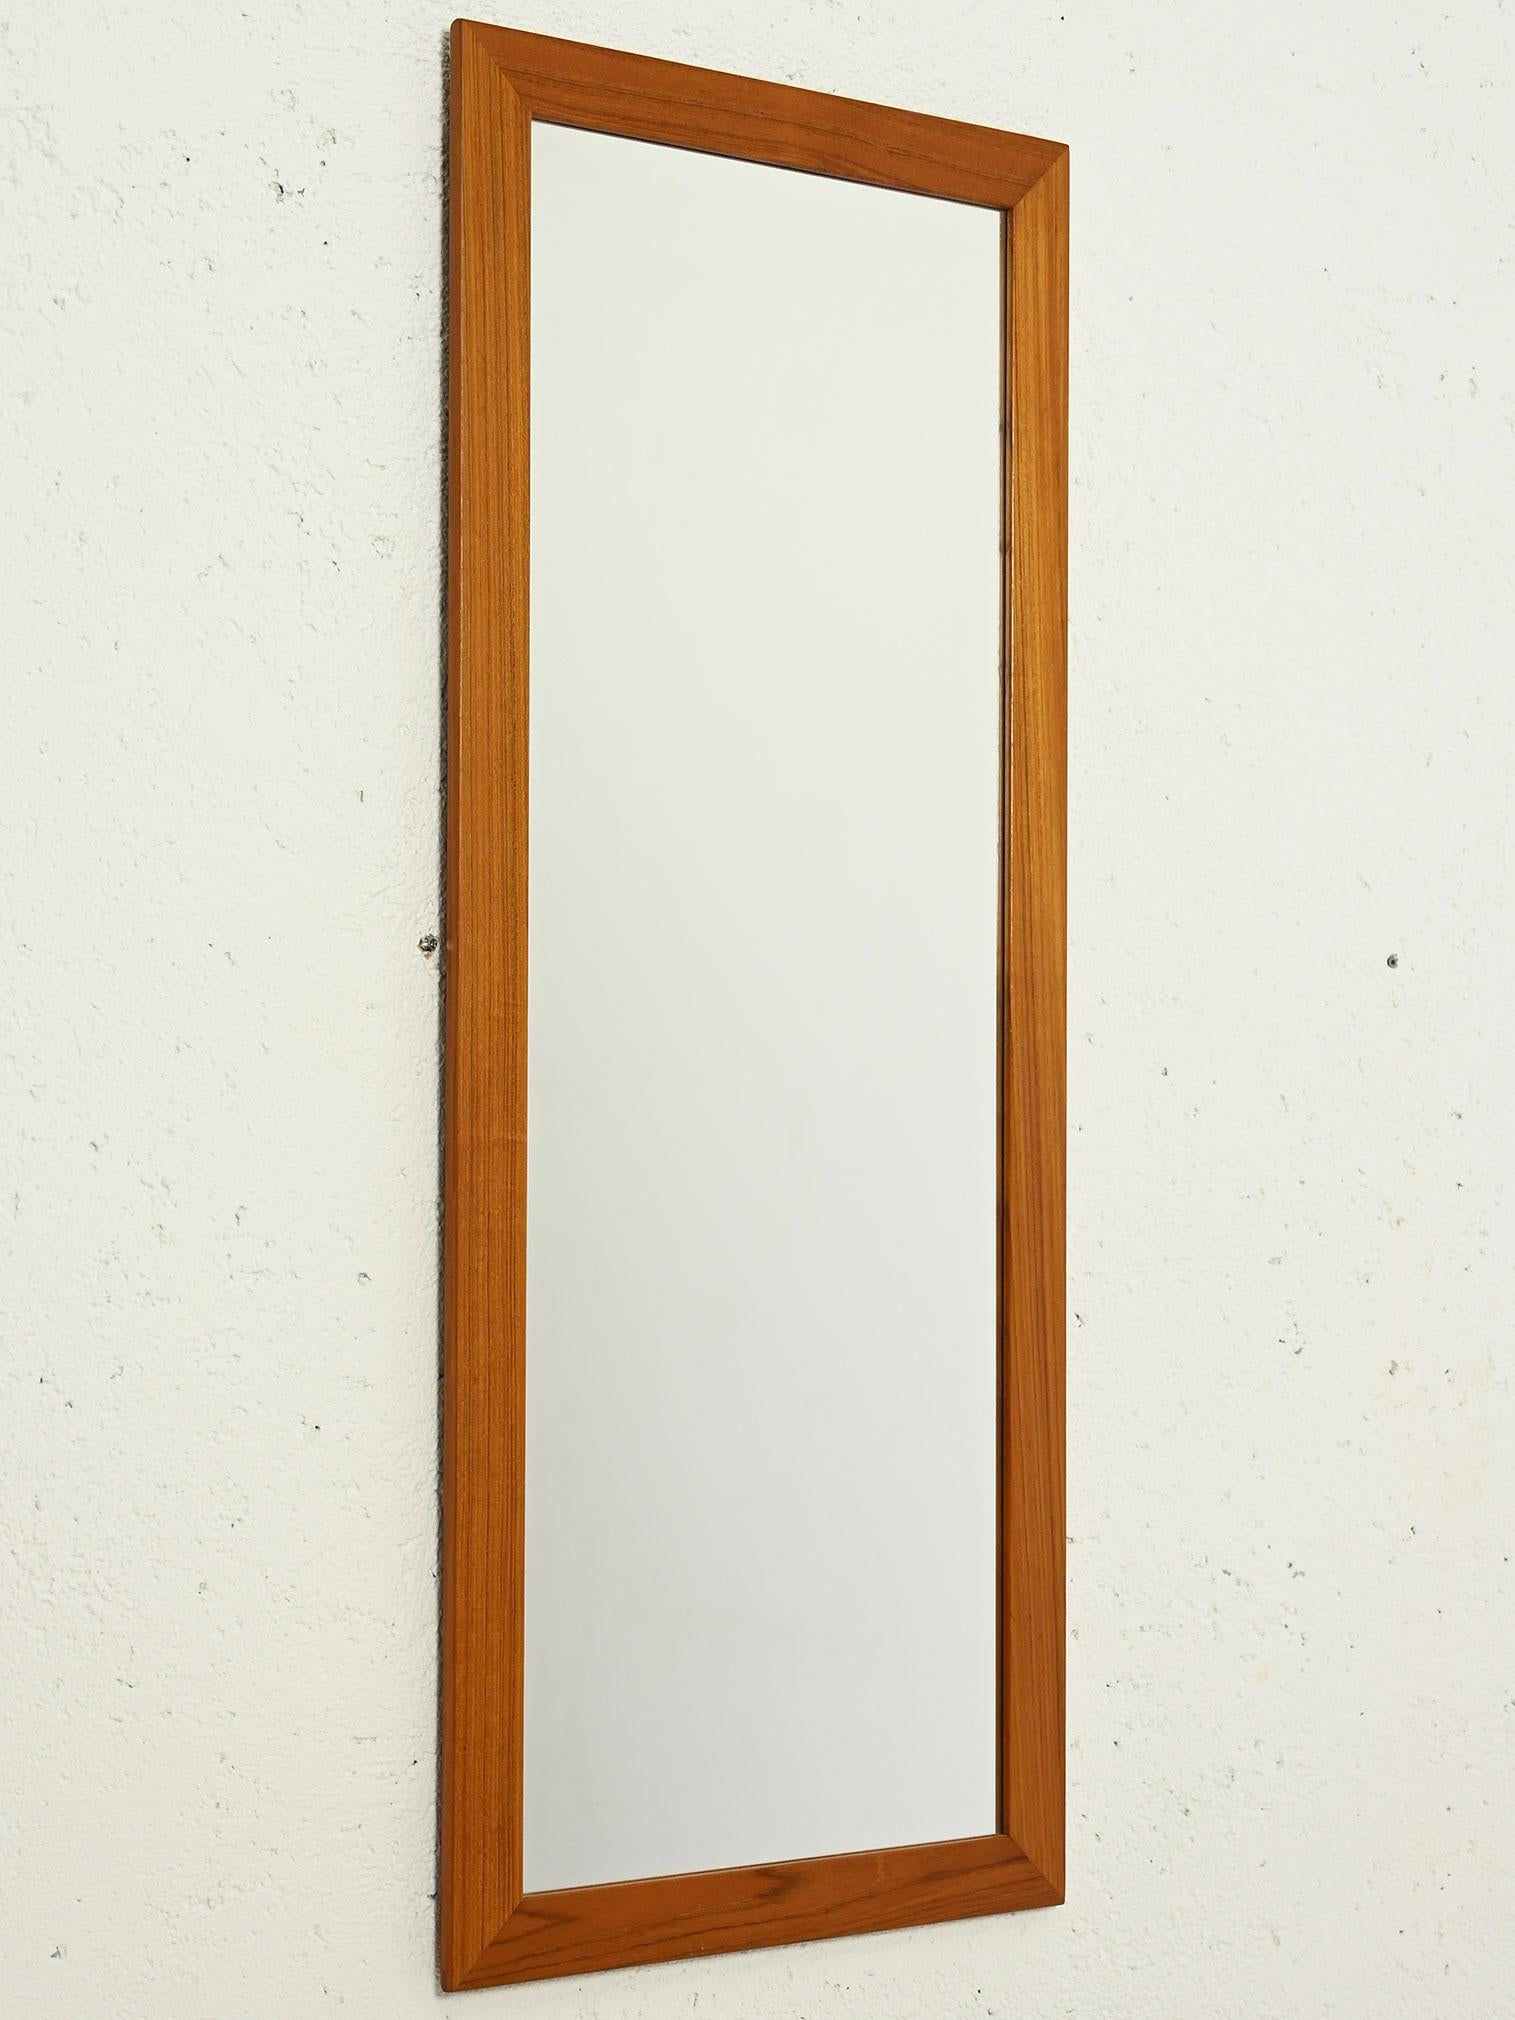 Großer rechteckiger Vintage-Spiegel aus Teakholz mit dickem Rahmen, hergestellt in Skandinavien in den 1950er/60er Jahren. 

Die elegante skandinavische Handwerkskunst spiegelt sich in den klaren, minimalen Linien wider. 

Die warme Teakholzfarbe